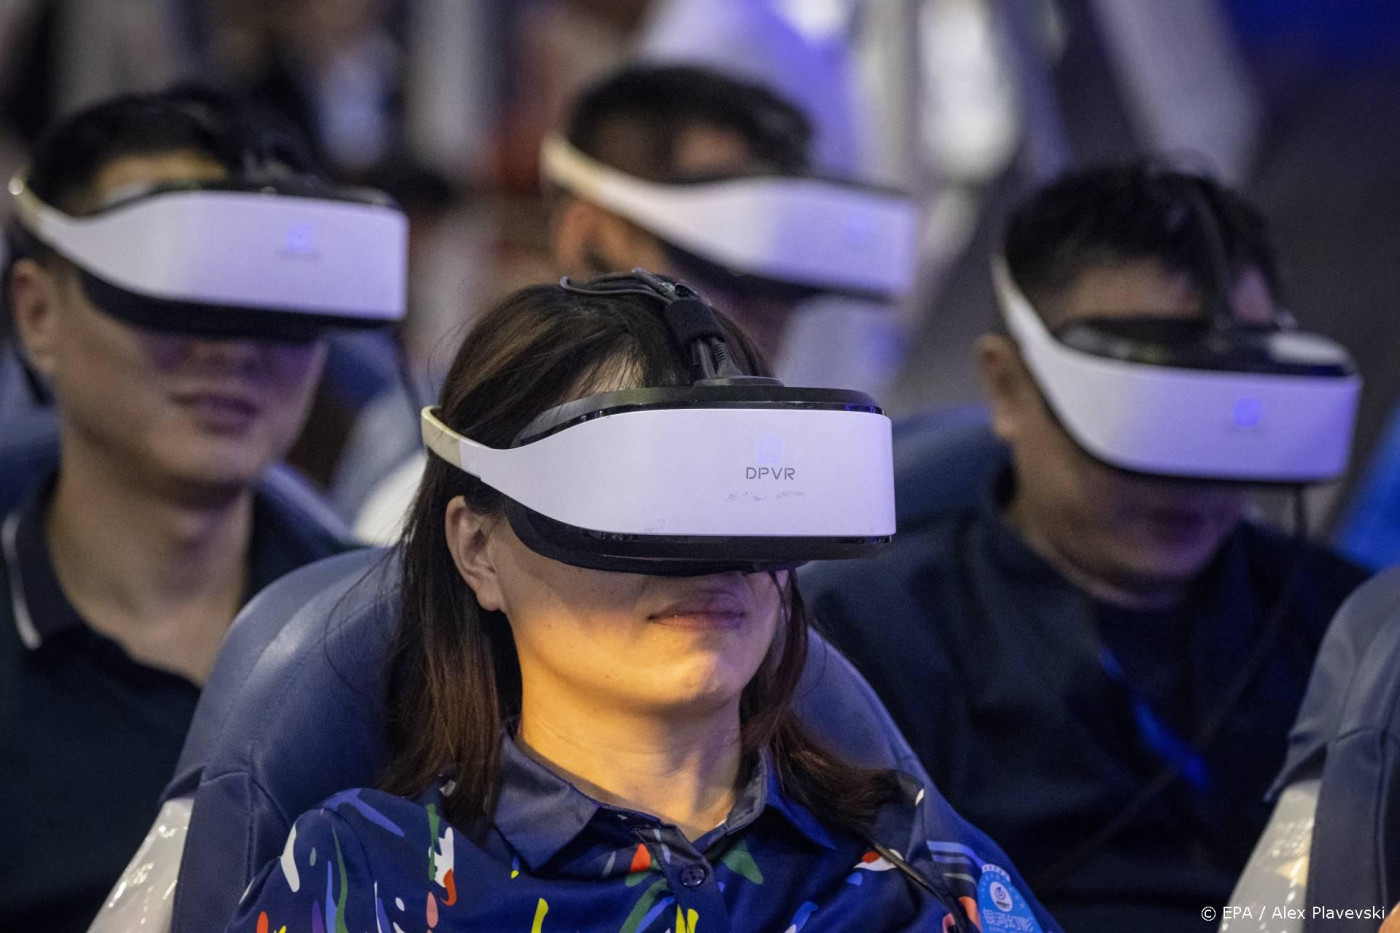 ‘VR kan diversiteitstraining effectiever maken’